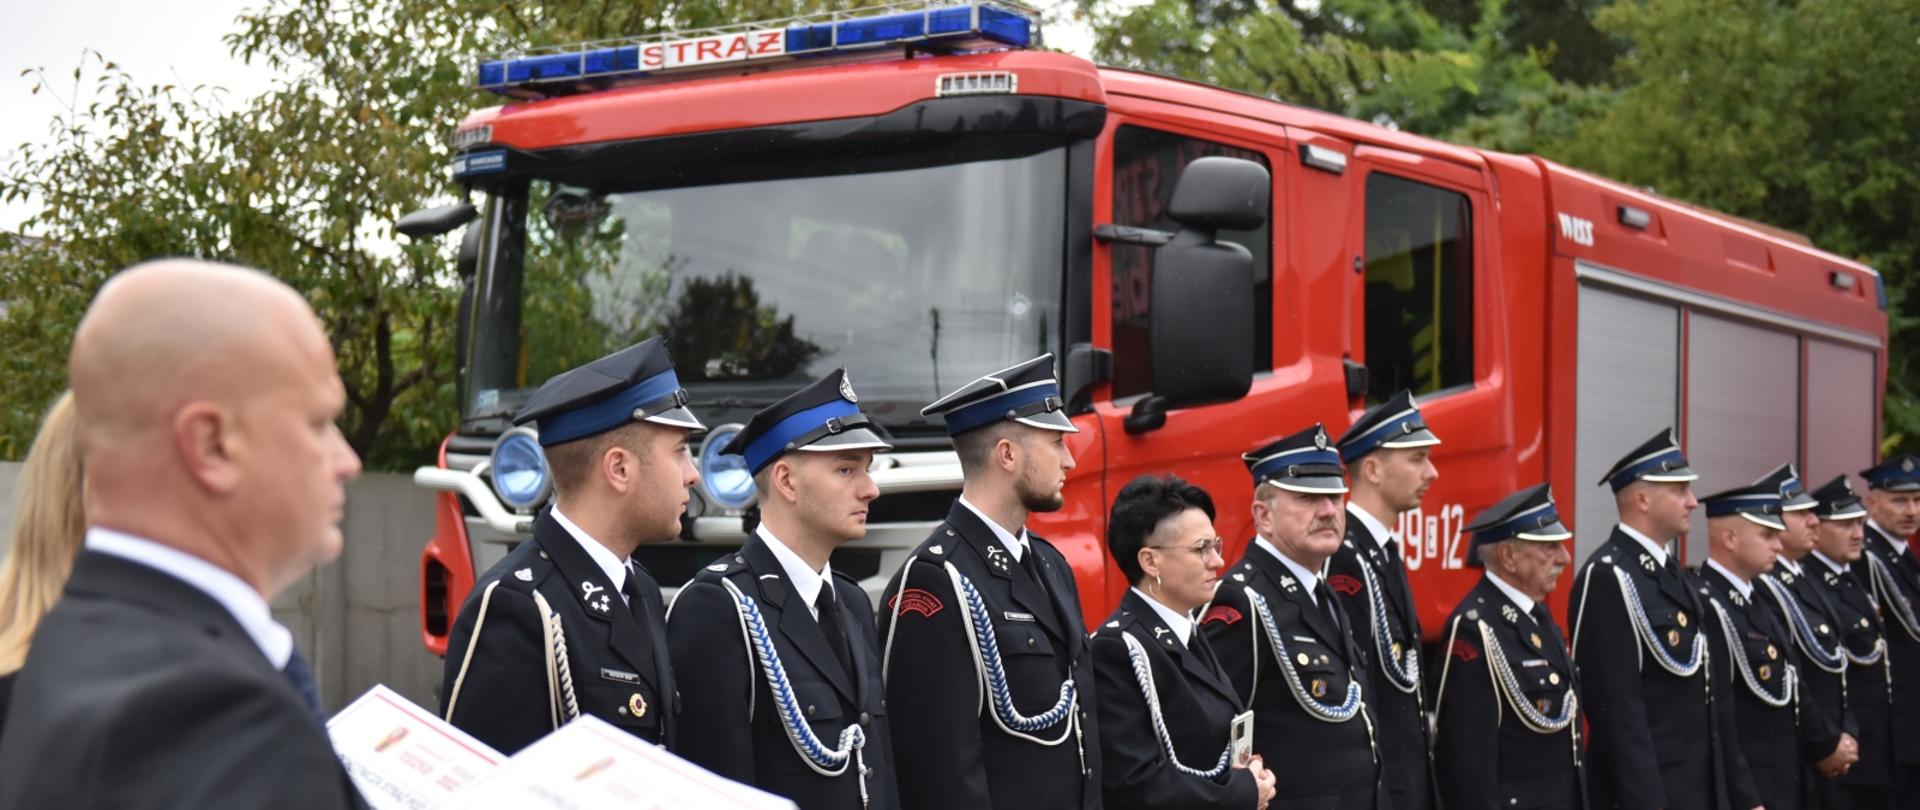 strażacy osp stojący w szeregu, za nimi stoi samochód strażacki, po lewej mężczyzna trzymający białe tabliczki obraz rozmazany